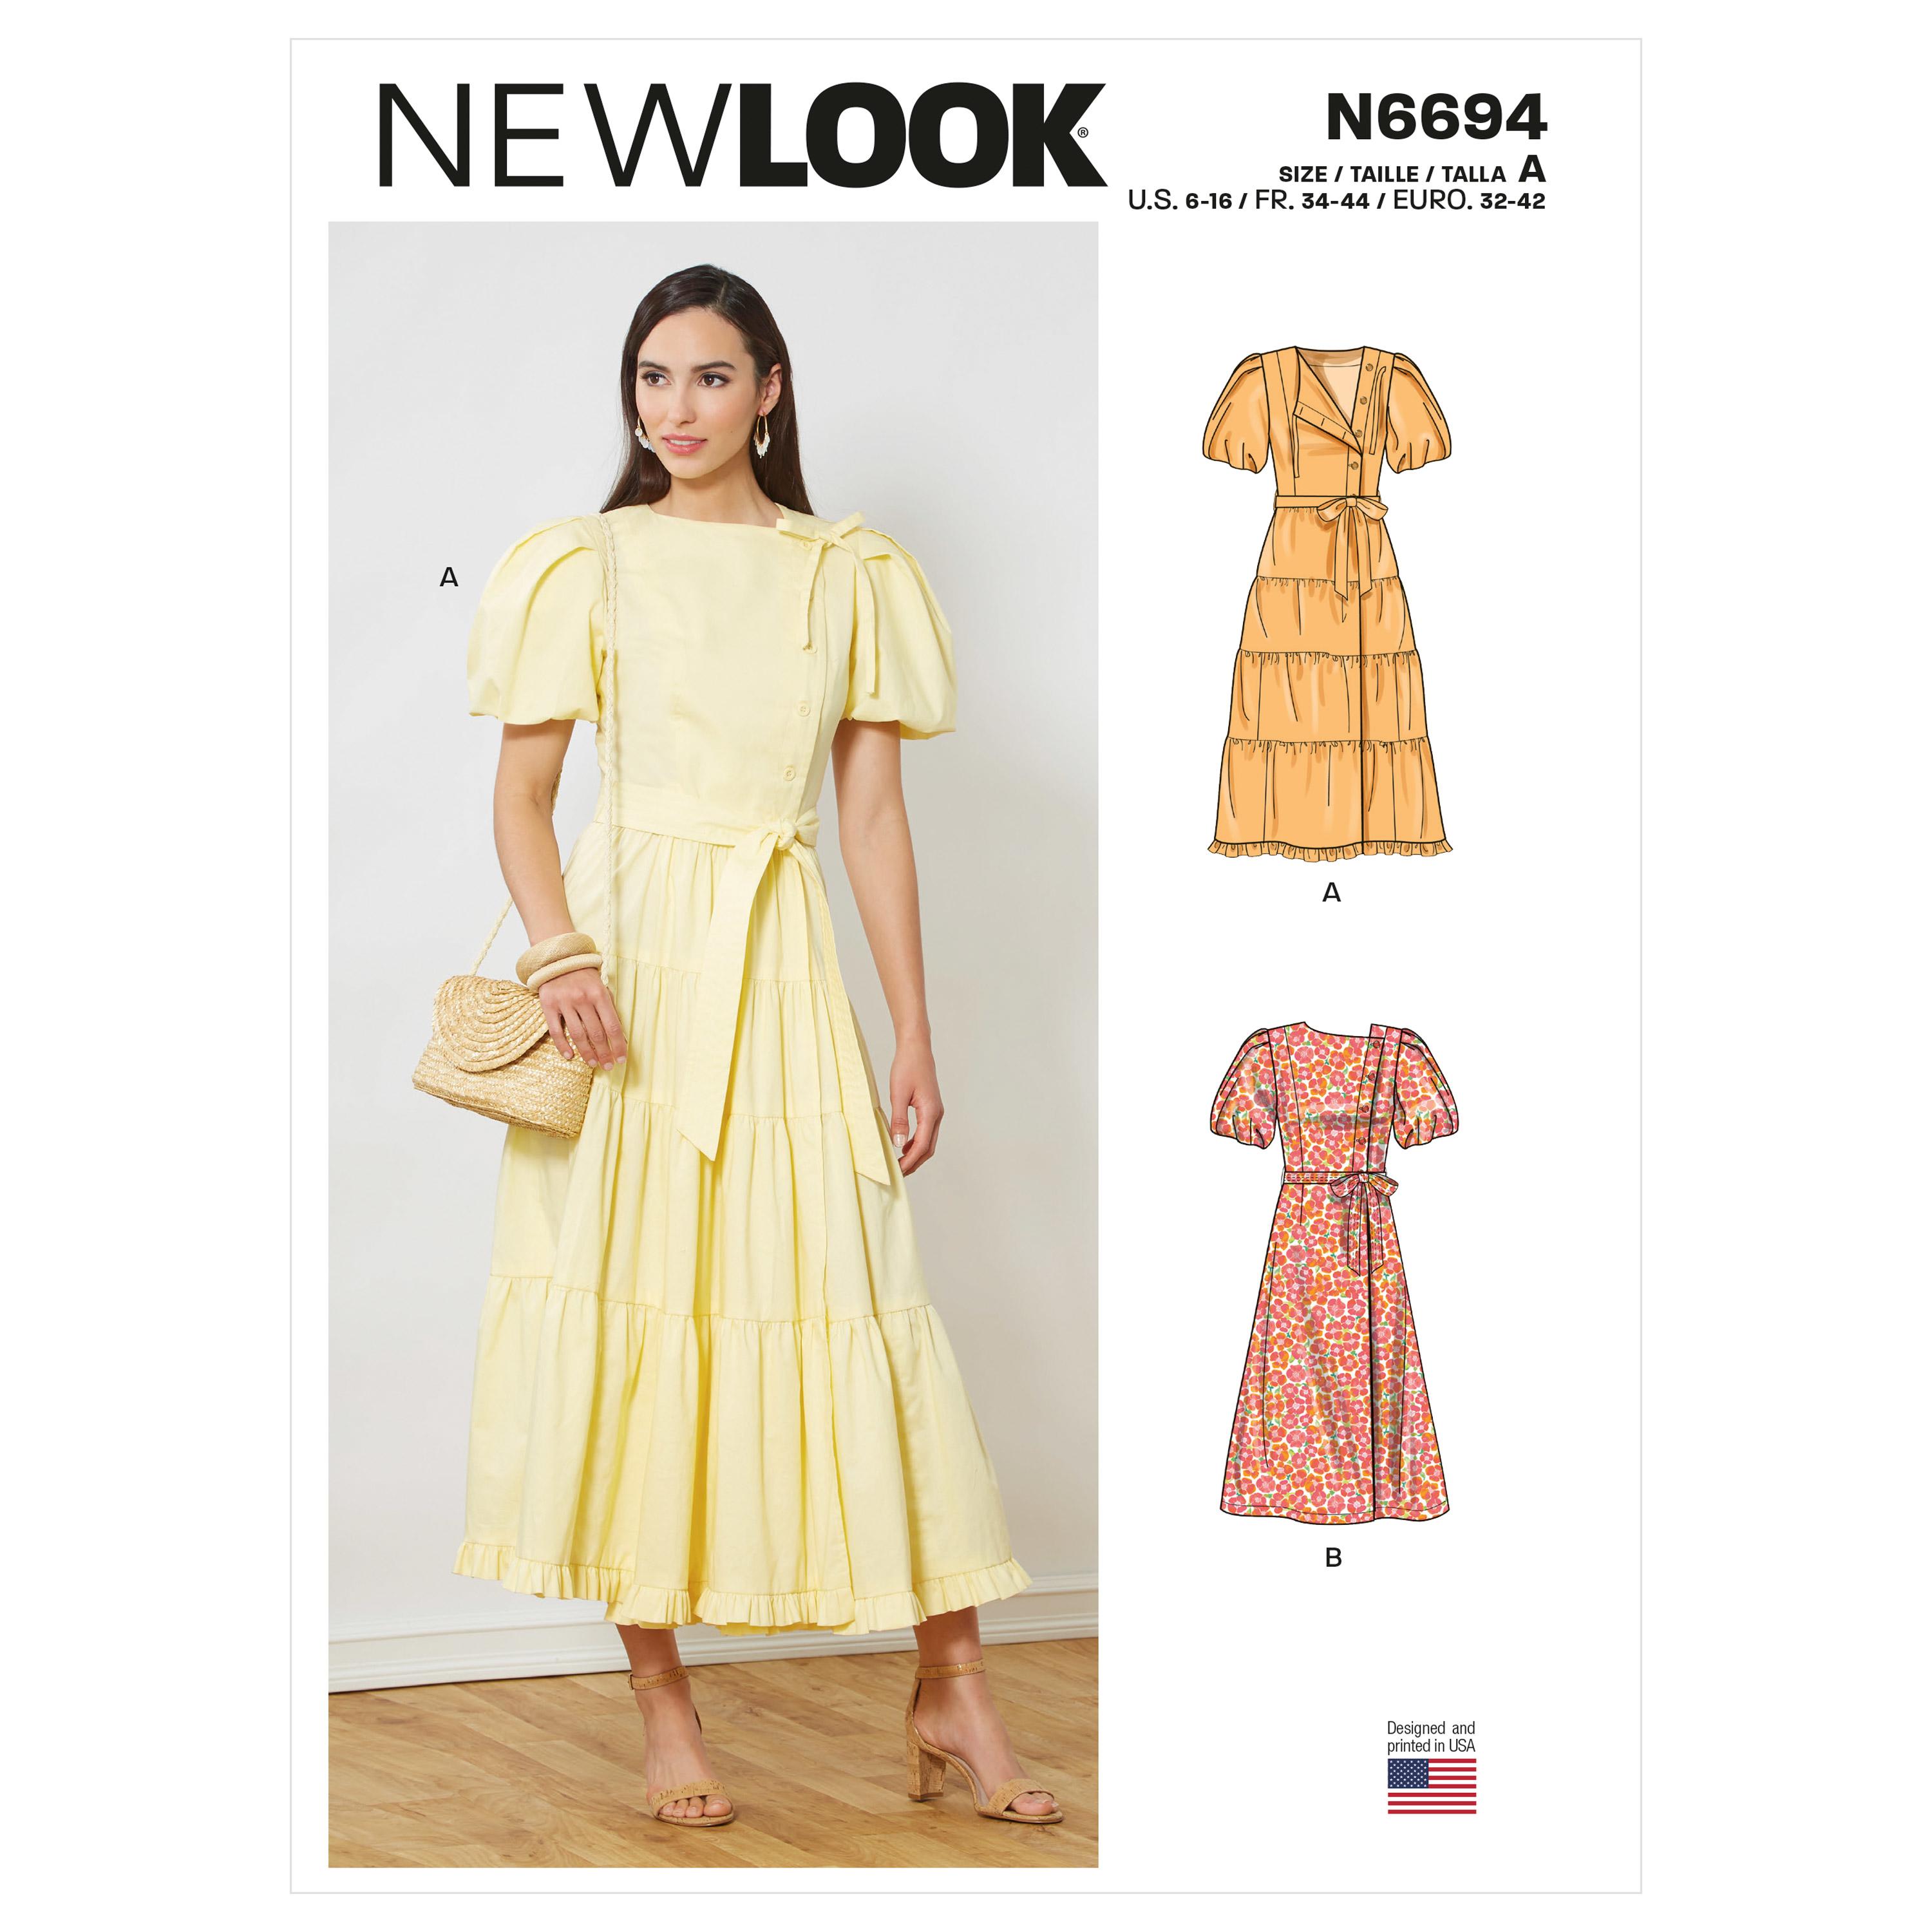 New Look Sewing Pattern N6694 Misses' Dresses